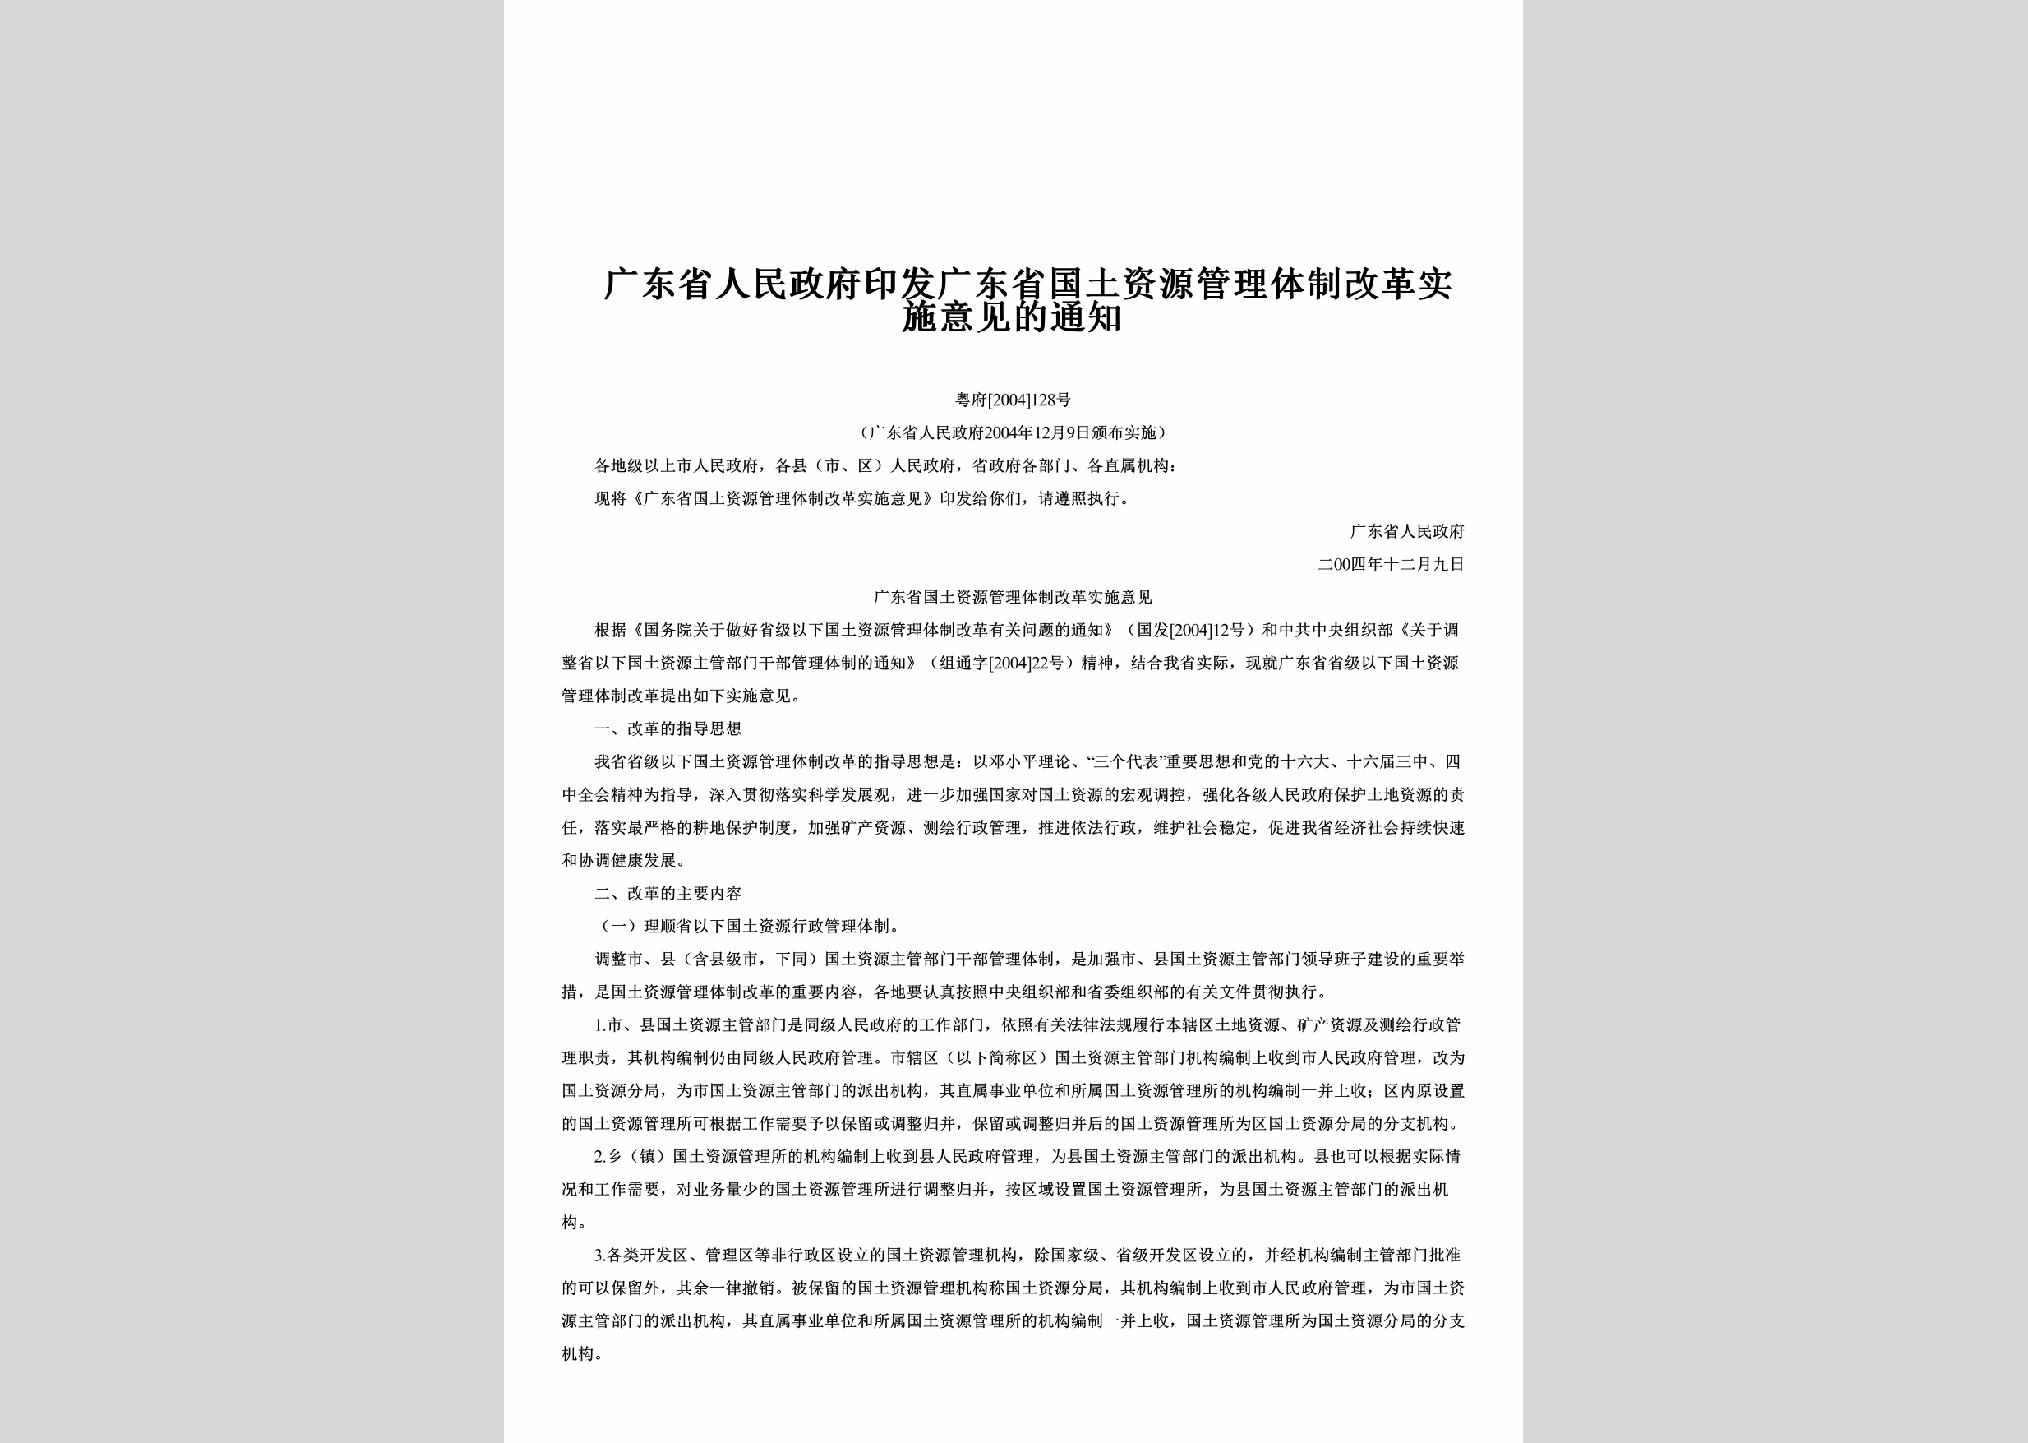 粤府[2004]128号：印发广东省国土资源管理体制改革实施意见的通知